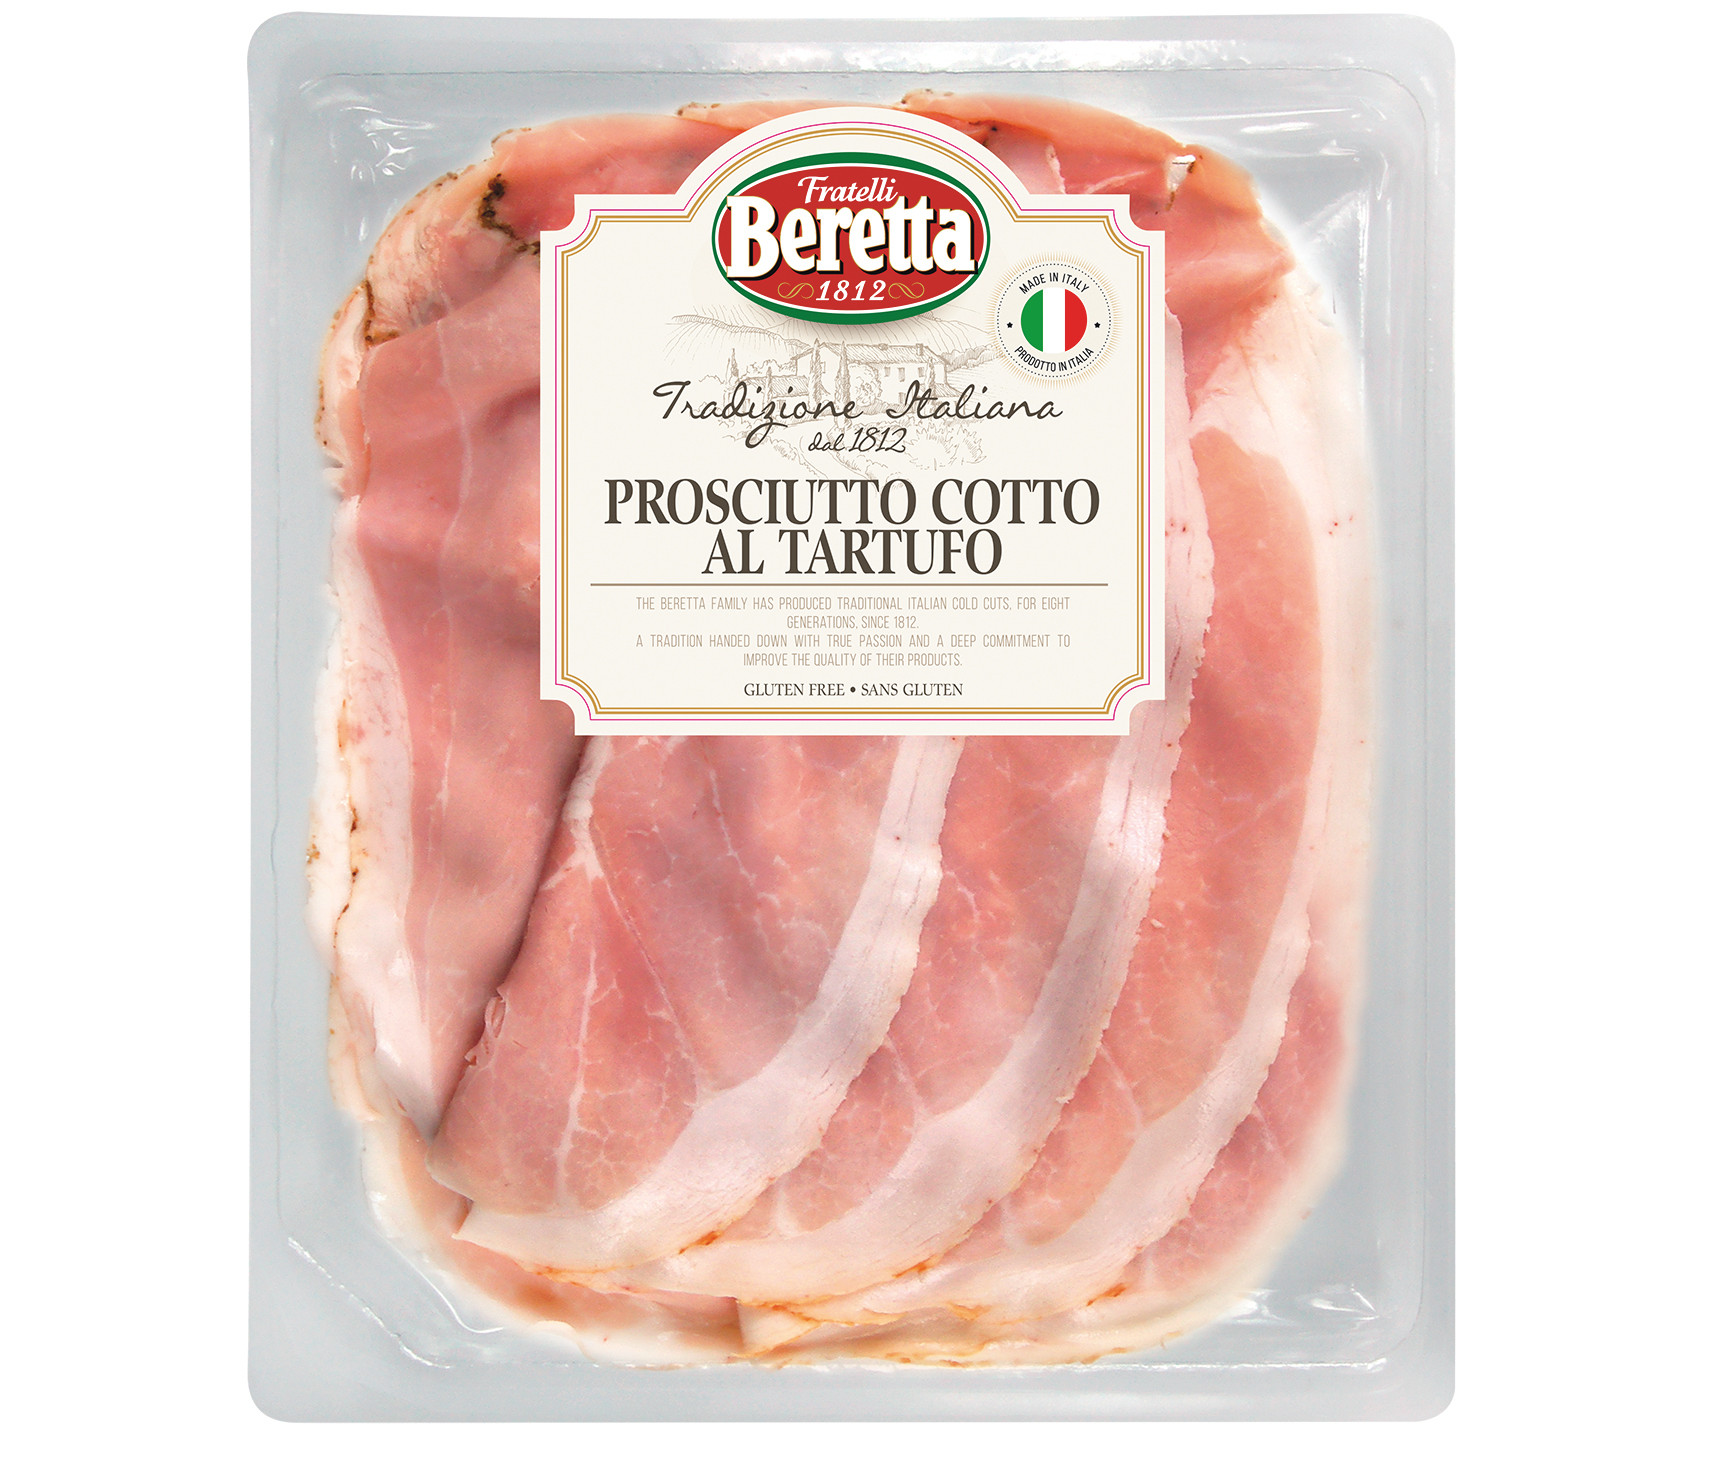 F.lli Beretta acquires Viva la Mamma - Italianfood.net